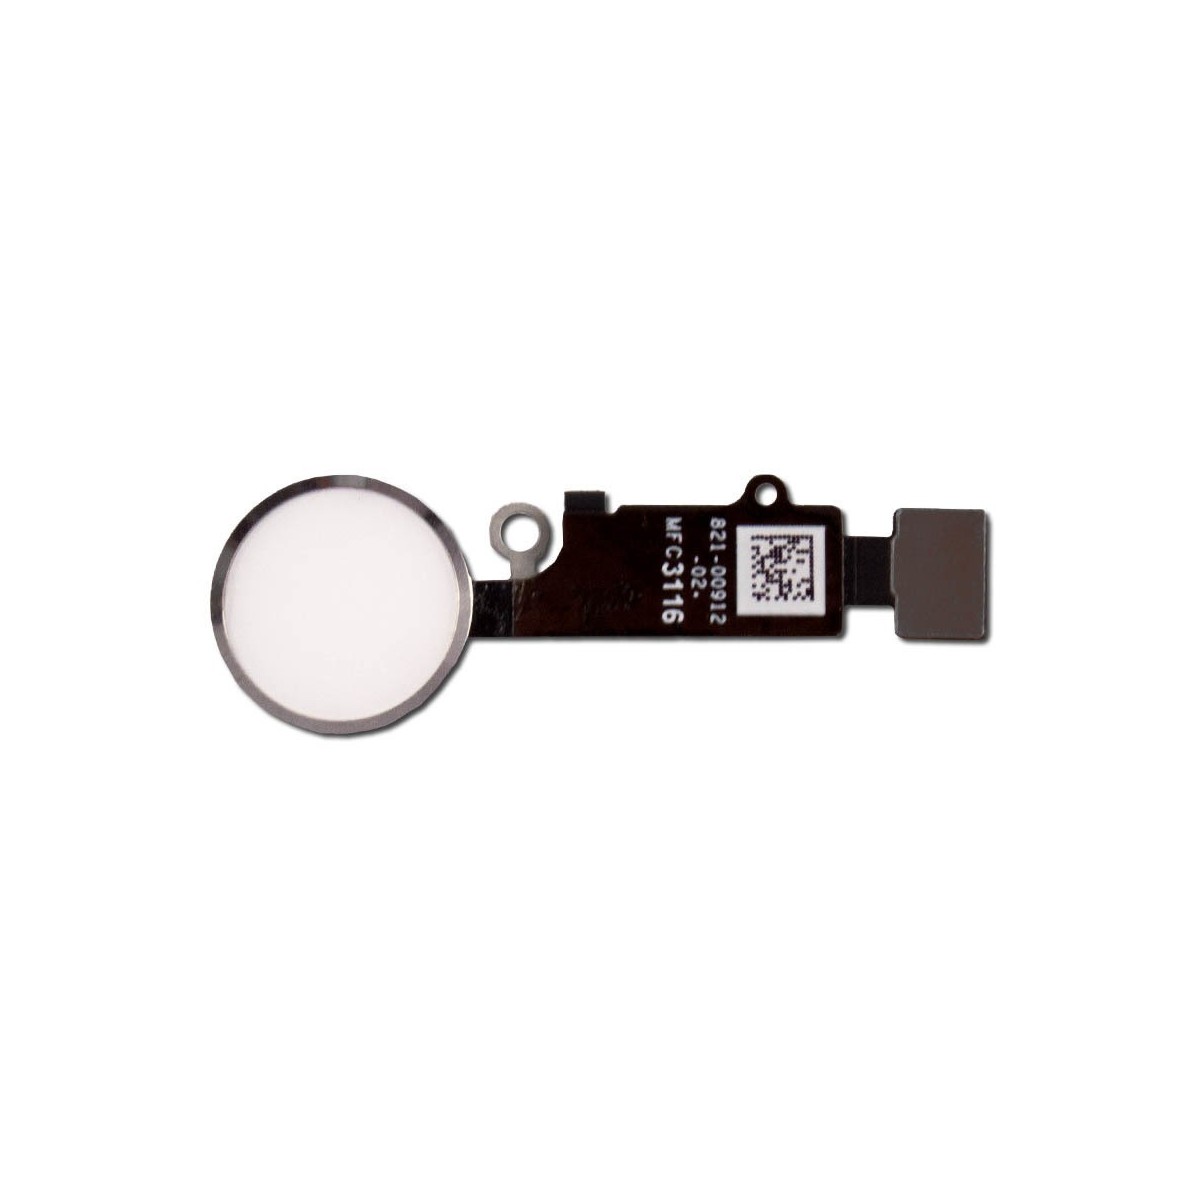 Bouton home blanc-argent compatible iPhone 7 (non fonctionnel)